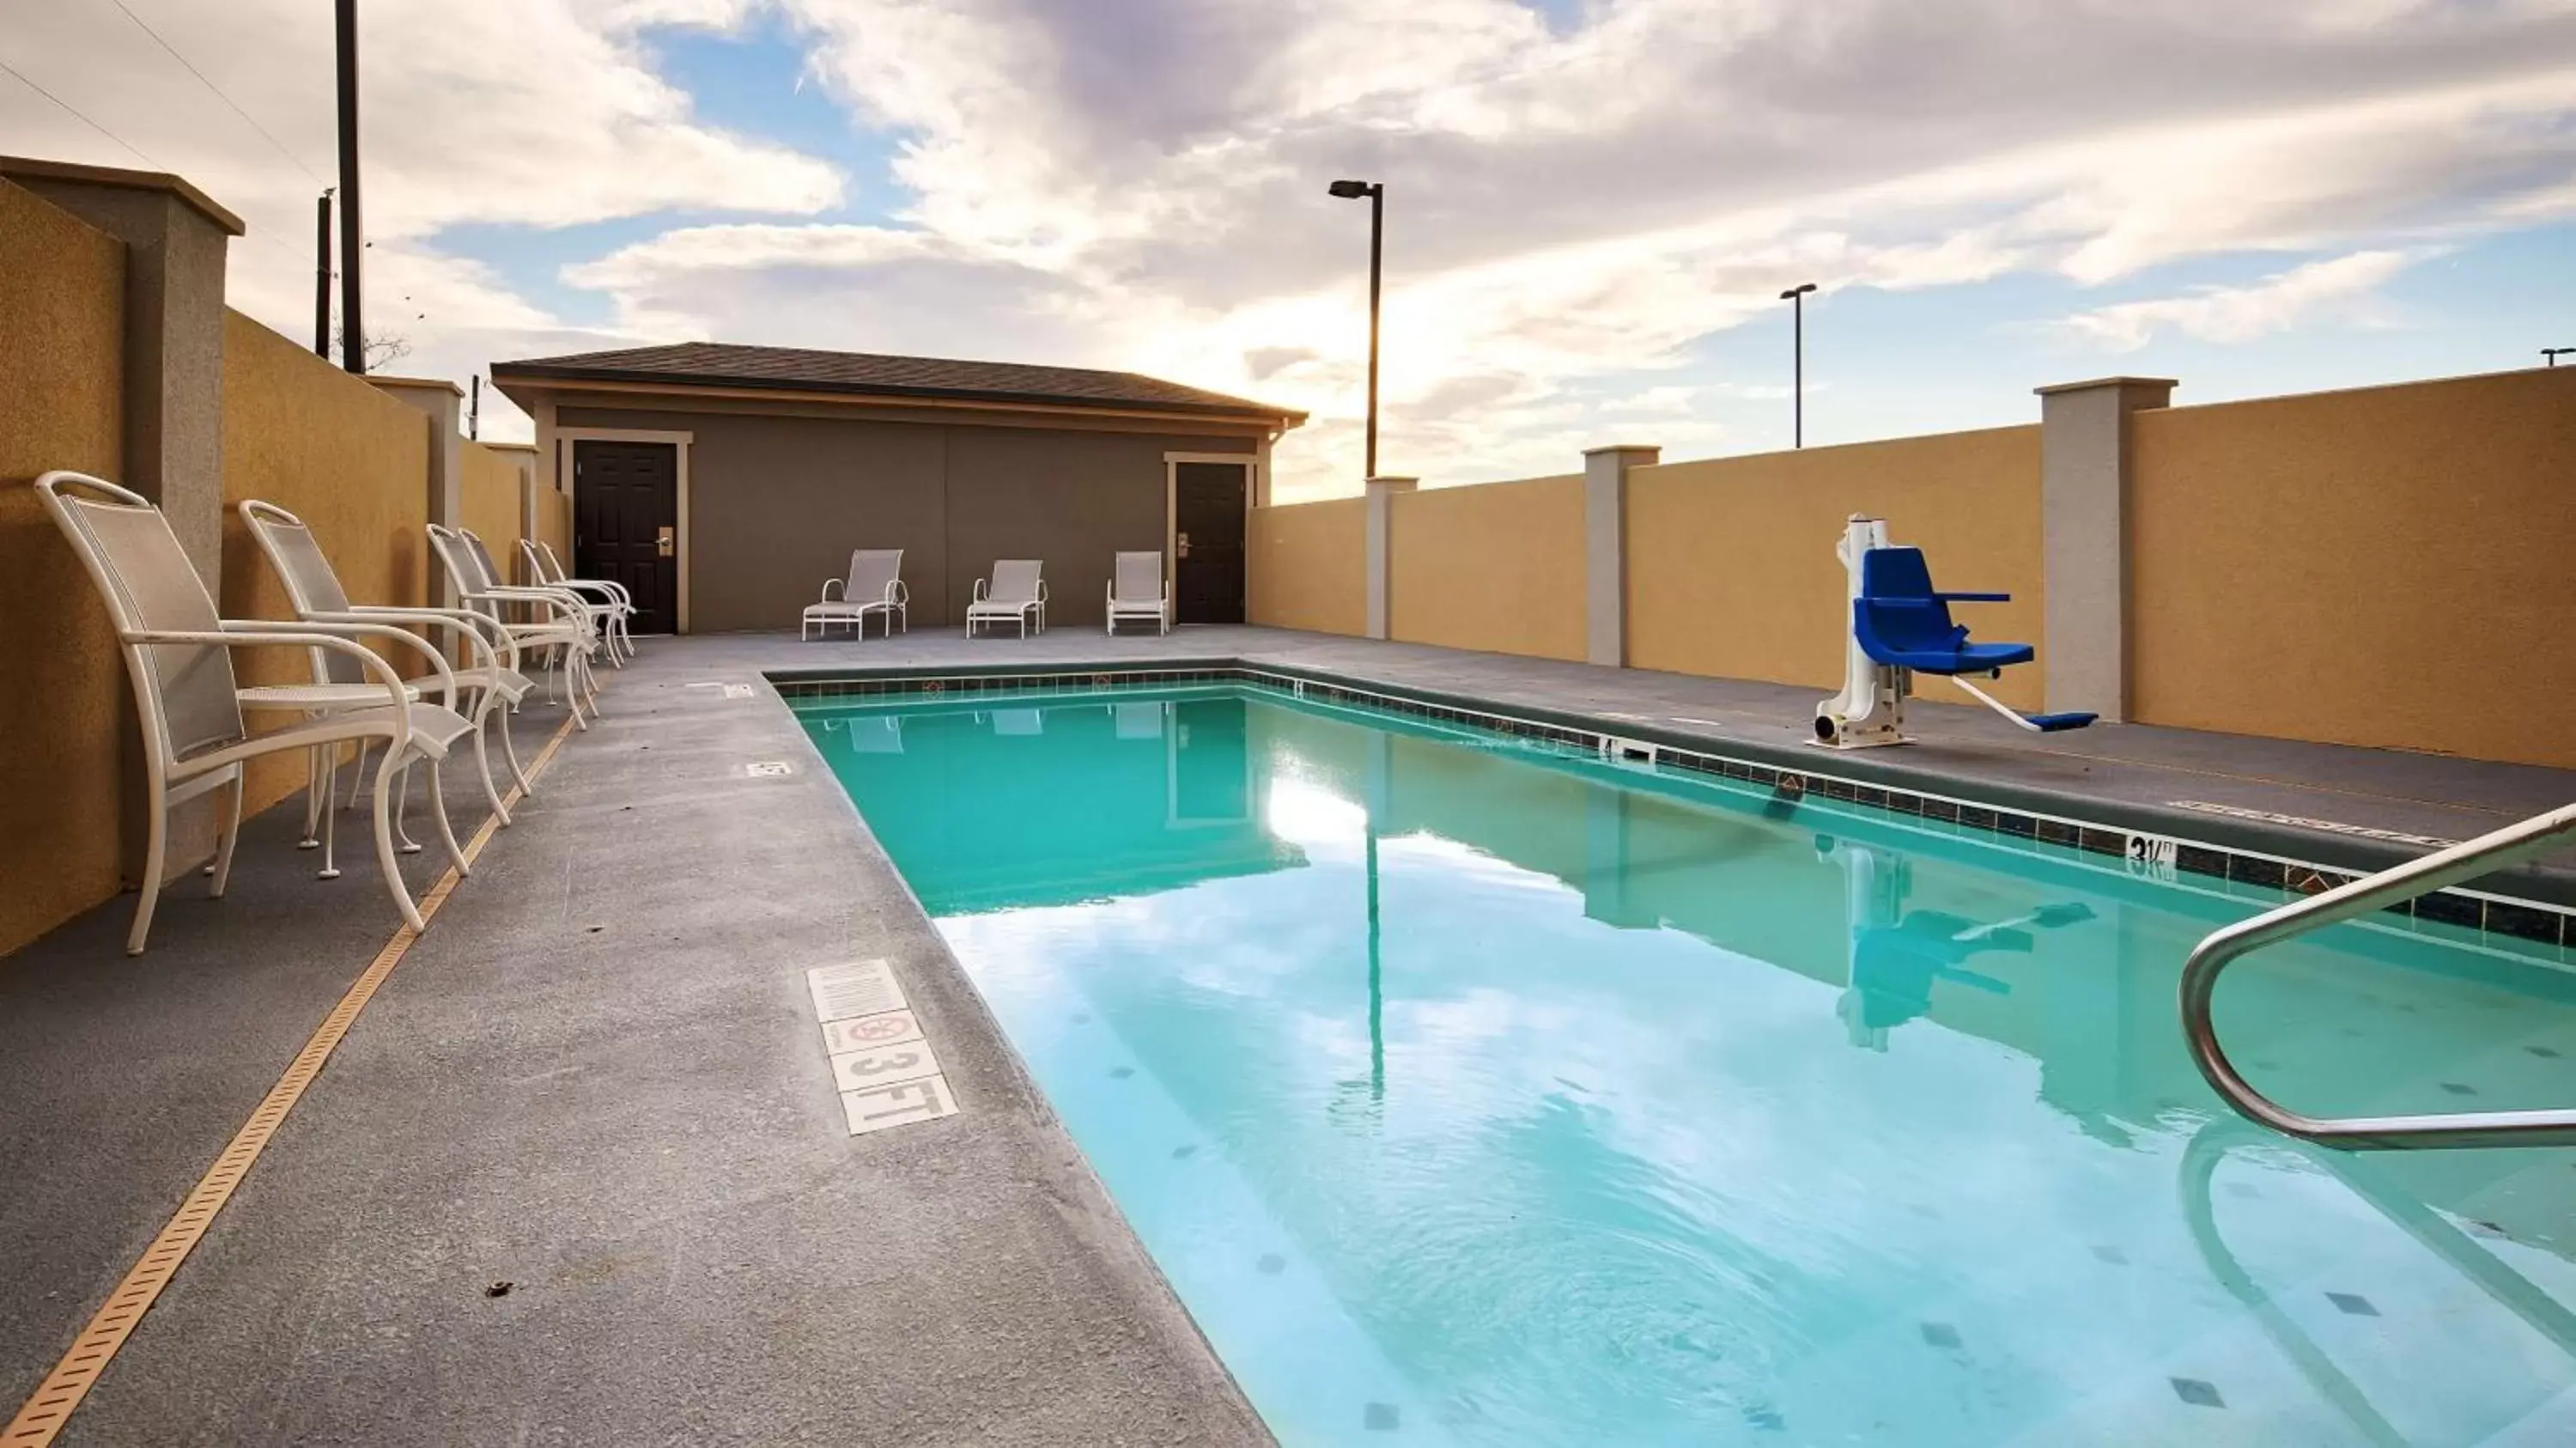 On site, Swimming Pool in Best Western Plus Lonestar Inn & Suites